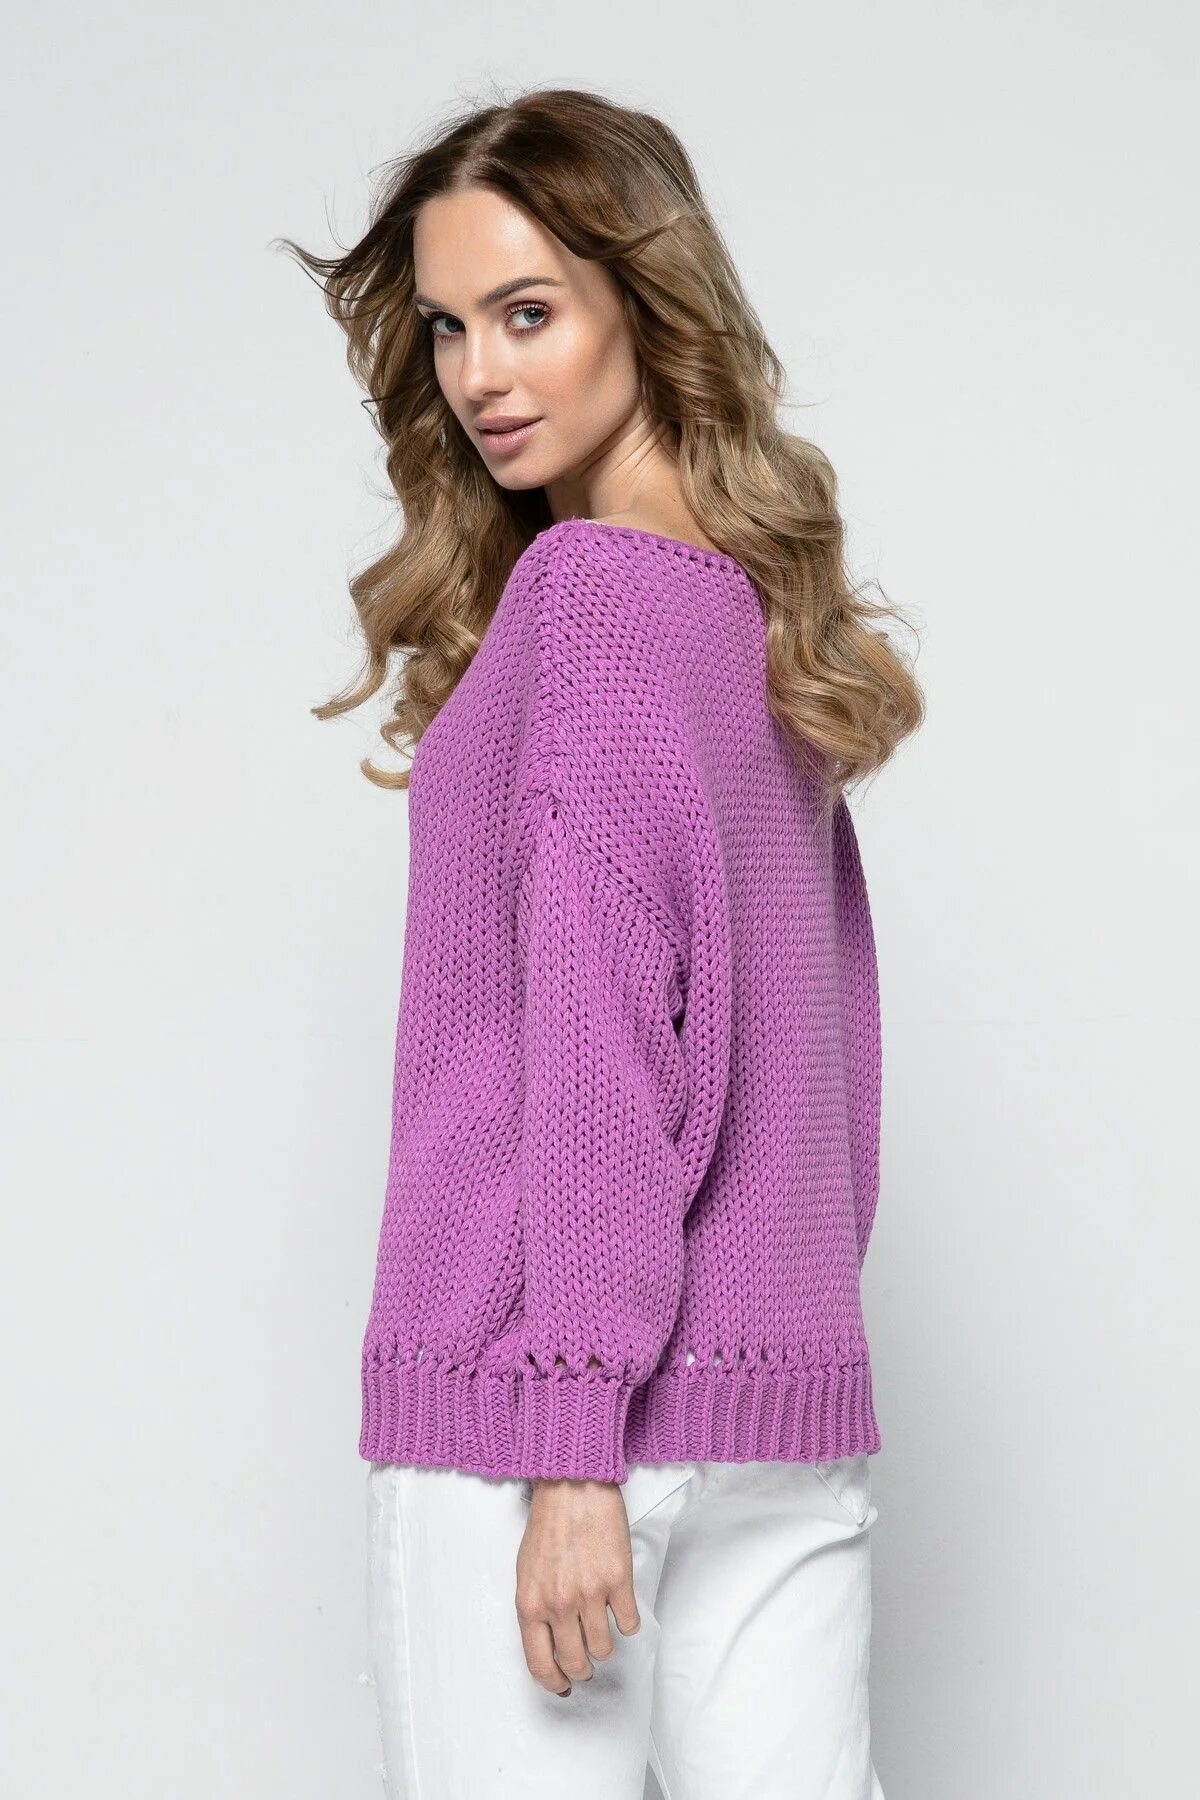 Каталог джемперов. FIMFI i242 свитер женский. Фиолетовый свитер. Сиренево-розовый свитер. Фиолетовый джемпер.